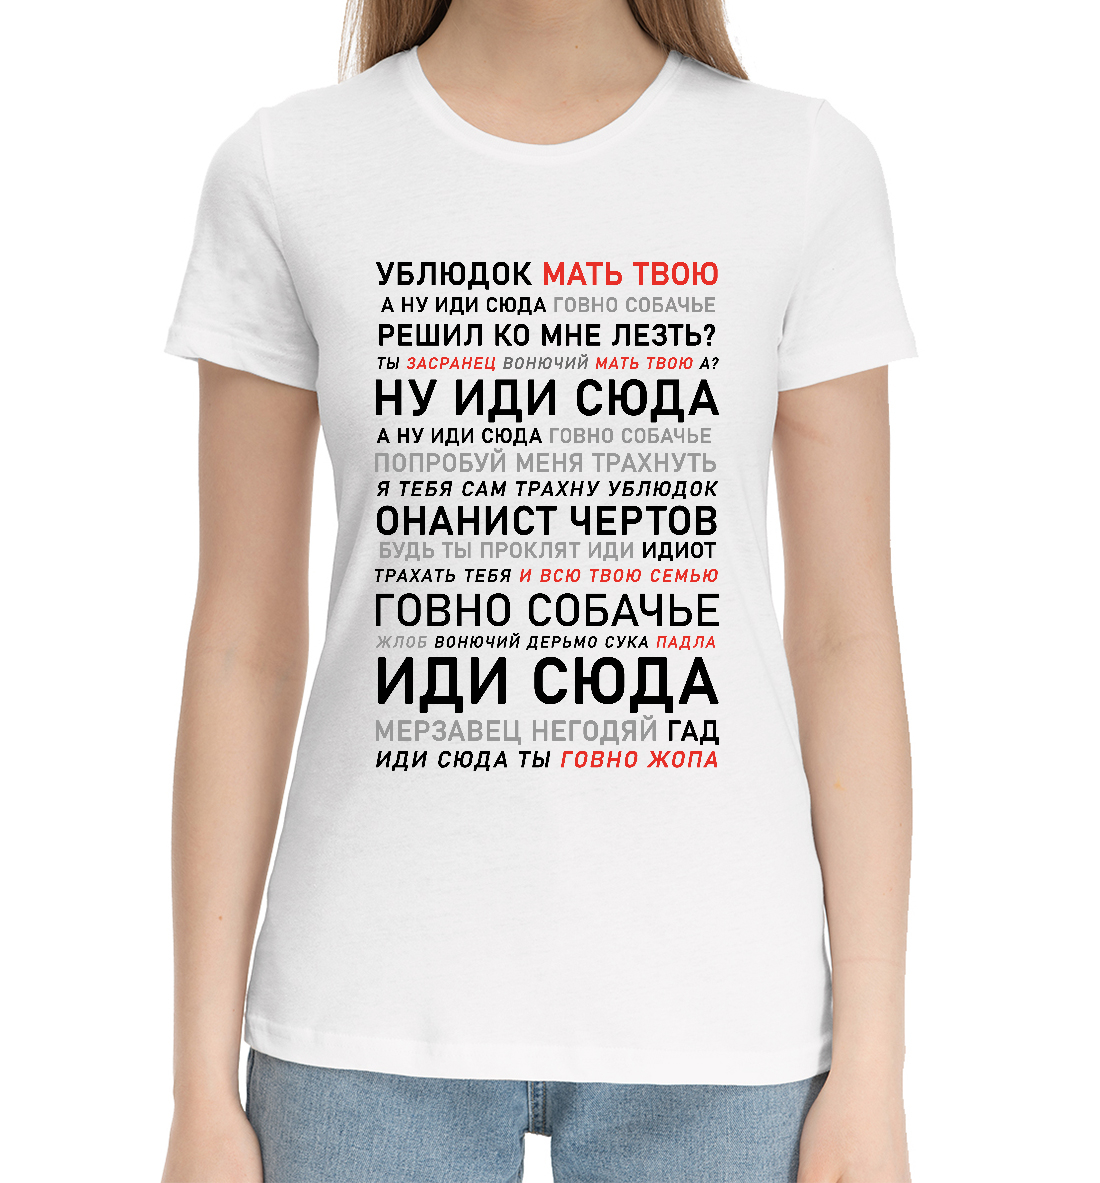 Женская Хлопковая футболка с надписью Ублюдок, мать твою, артикул MEM-560553-hfu-1mp